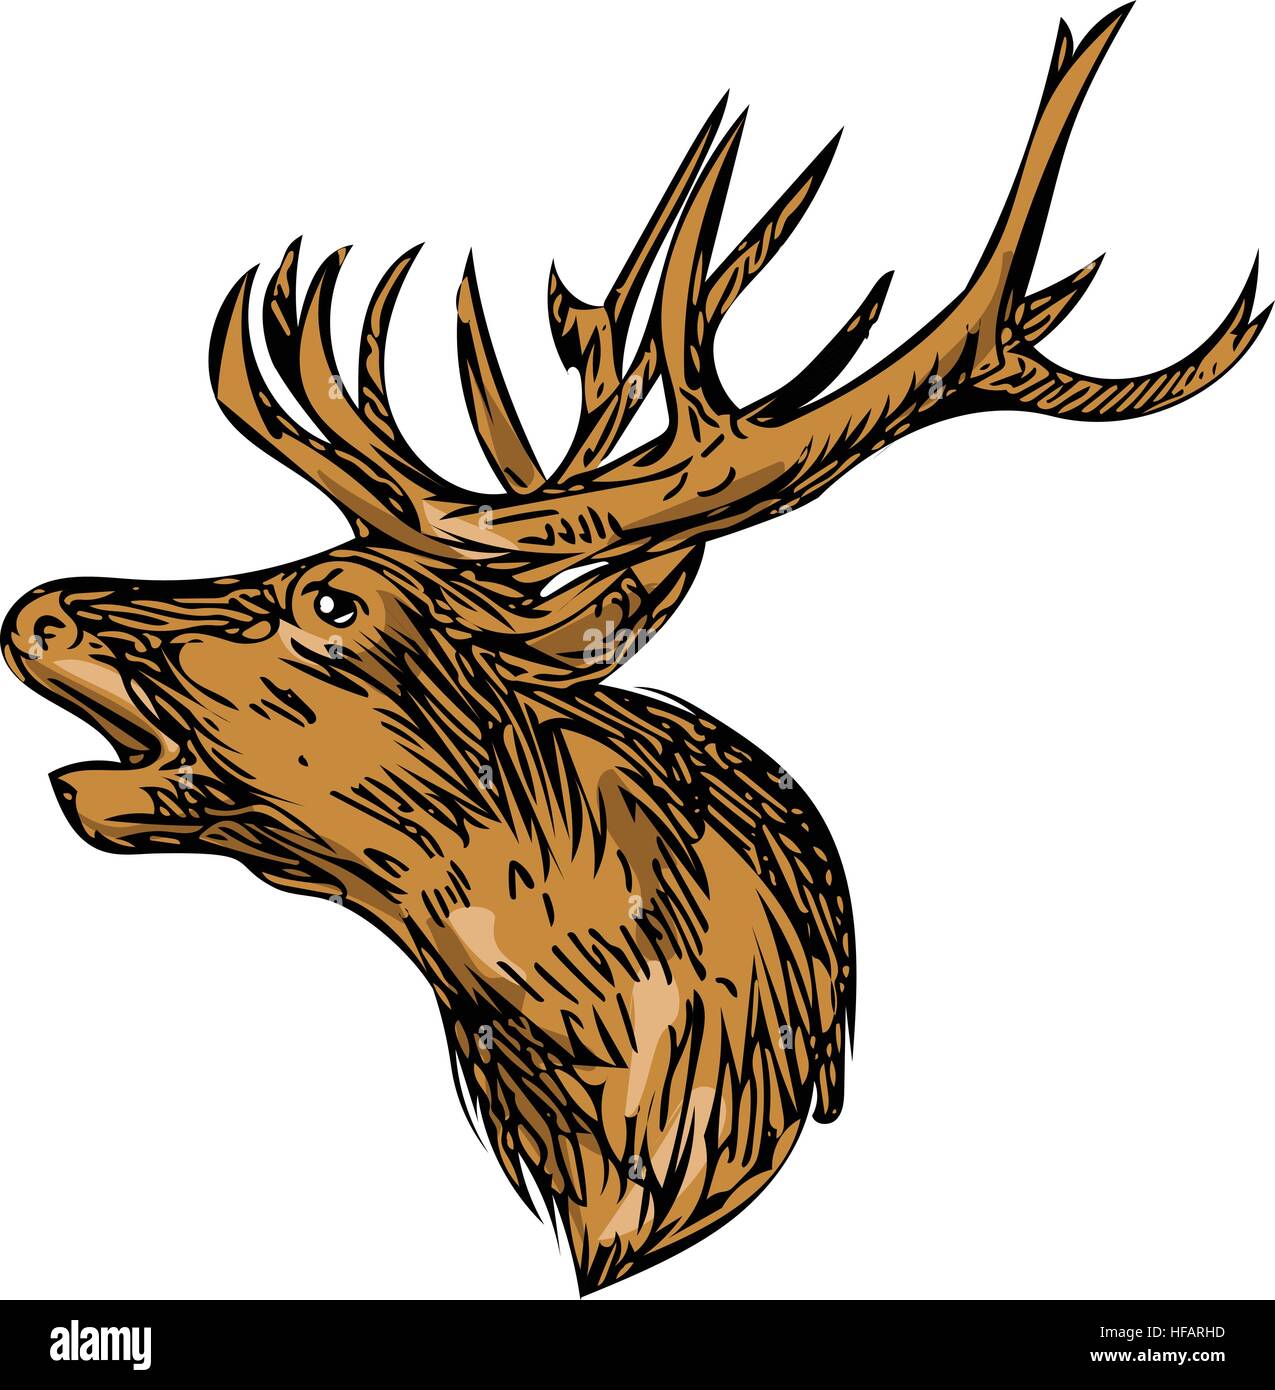 Croquis dessin illustration d'un style red deer stag head buck roaring face set isolées sur fond blanc. Illustration de Vecteur